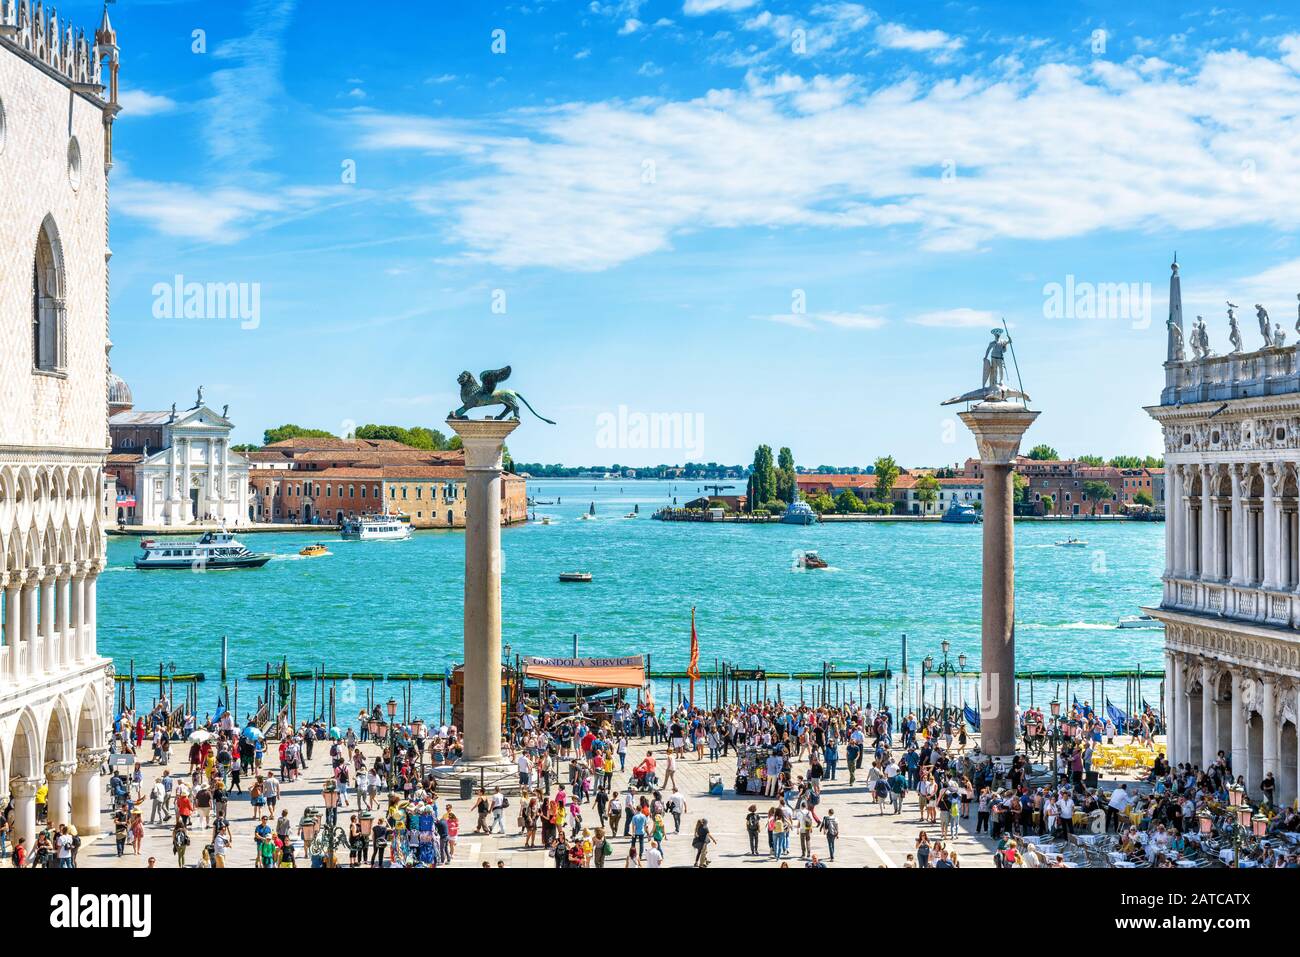 Venedig, Italien - 21. Mai 2017: Die Menschen besuchen die Böschung an der Piazza San Marco in Venedig. Dieser Ort ist eine der beliebtesten Touristenattraktionen Venedigs. Konzept Stockfoto